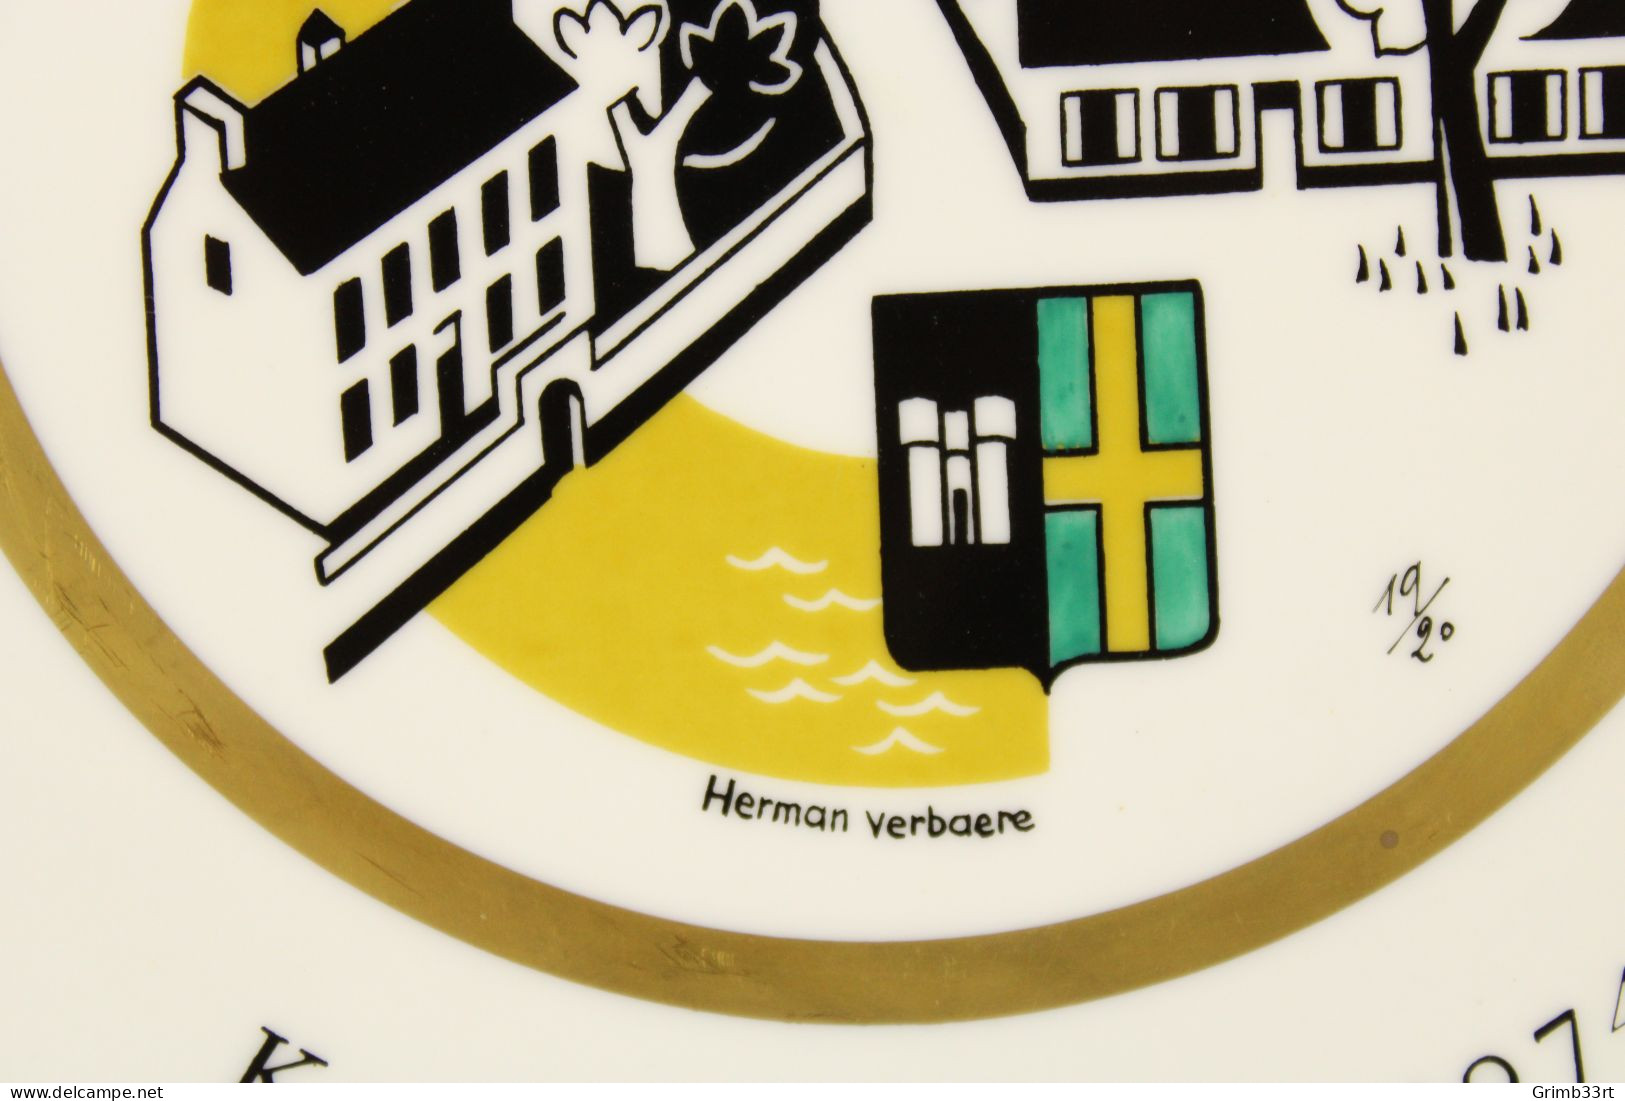 Deurle - Handbooggilde De Harlekijnen - 1974 - Herman Verbaere 19/20 - Sierbord Schuttersgilde - Boogschieten - 25.1 Cm - Tiro Con L'Arco